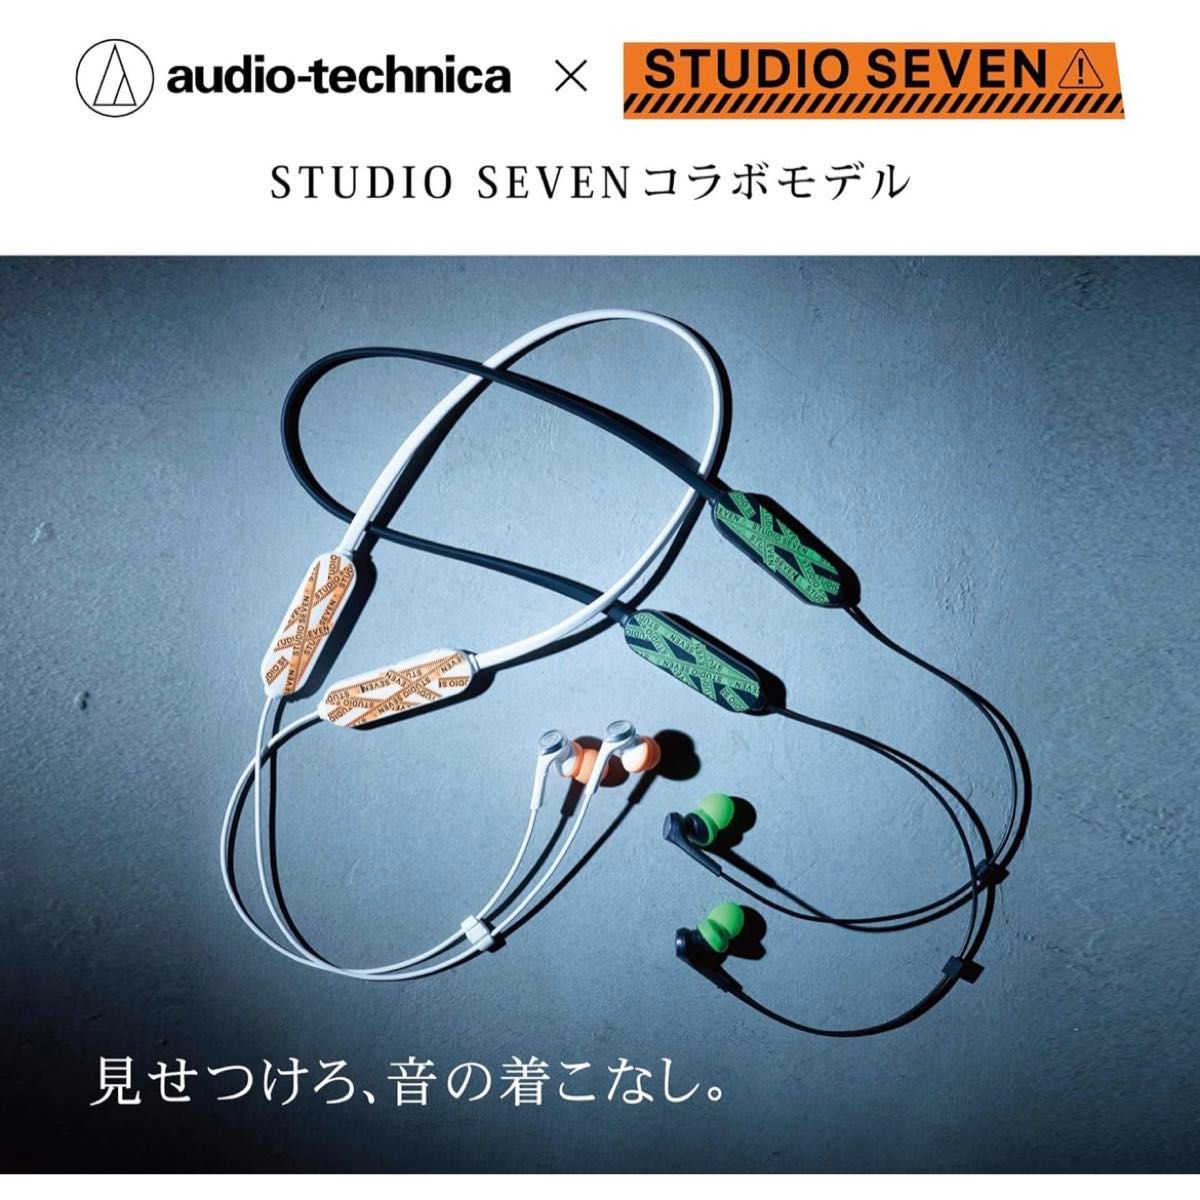 【新品 未使用】STUDIO SEVEN コラボモデル ワイヤレスイヤホン audio-technica ATH-CKSXBT